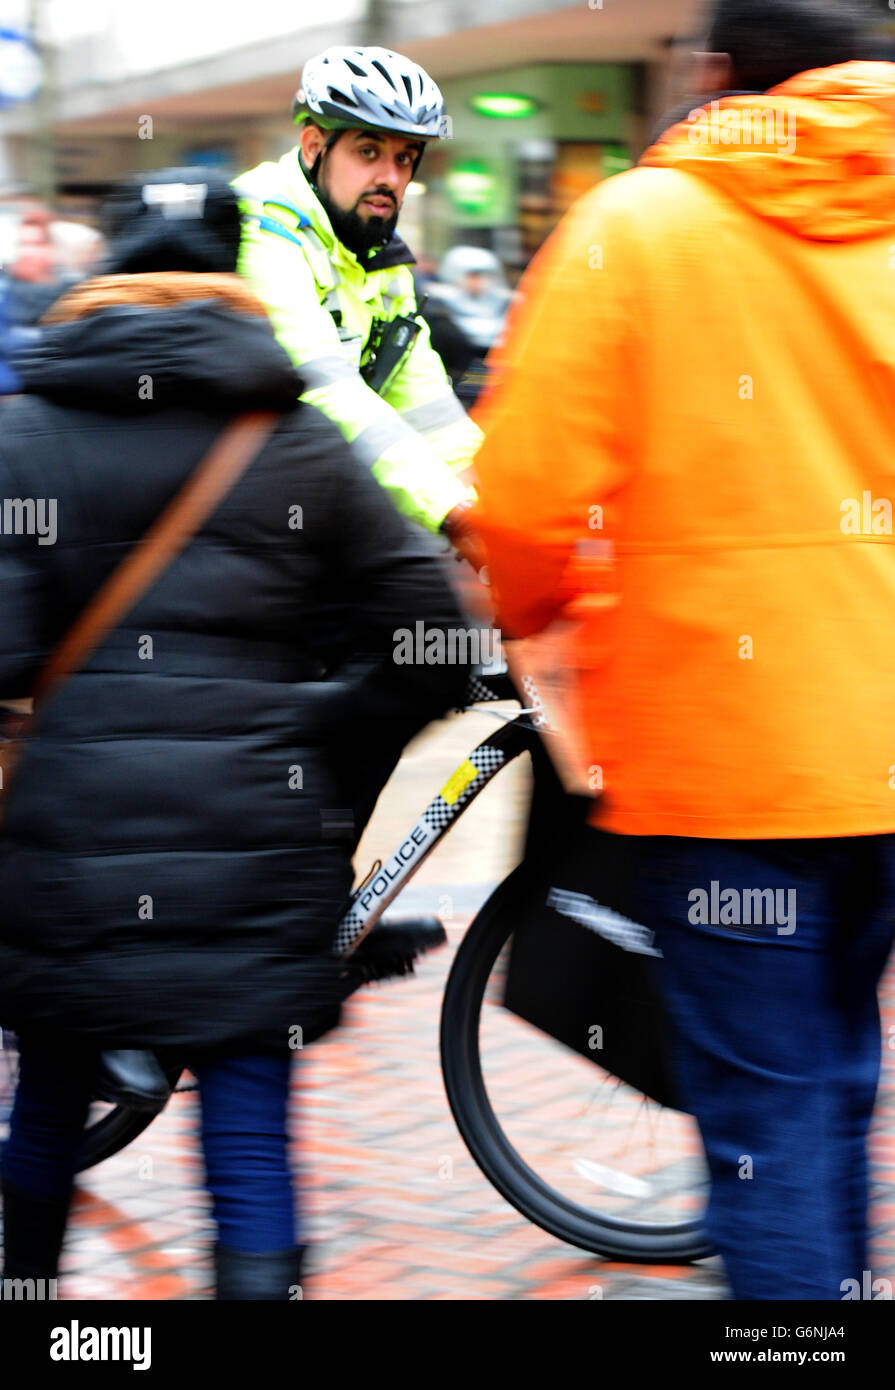 Un oficial de apoyo comunitario de la policía utiliza una bicicleta policial para patrullar las calles del centro de Birmingham. Foto de stock